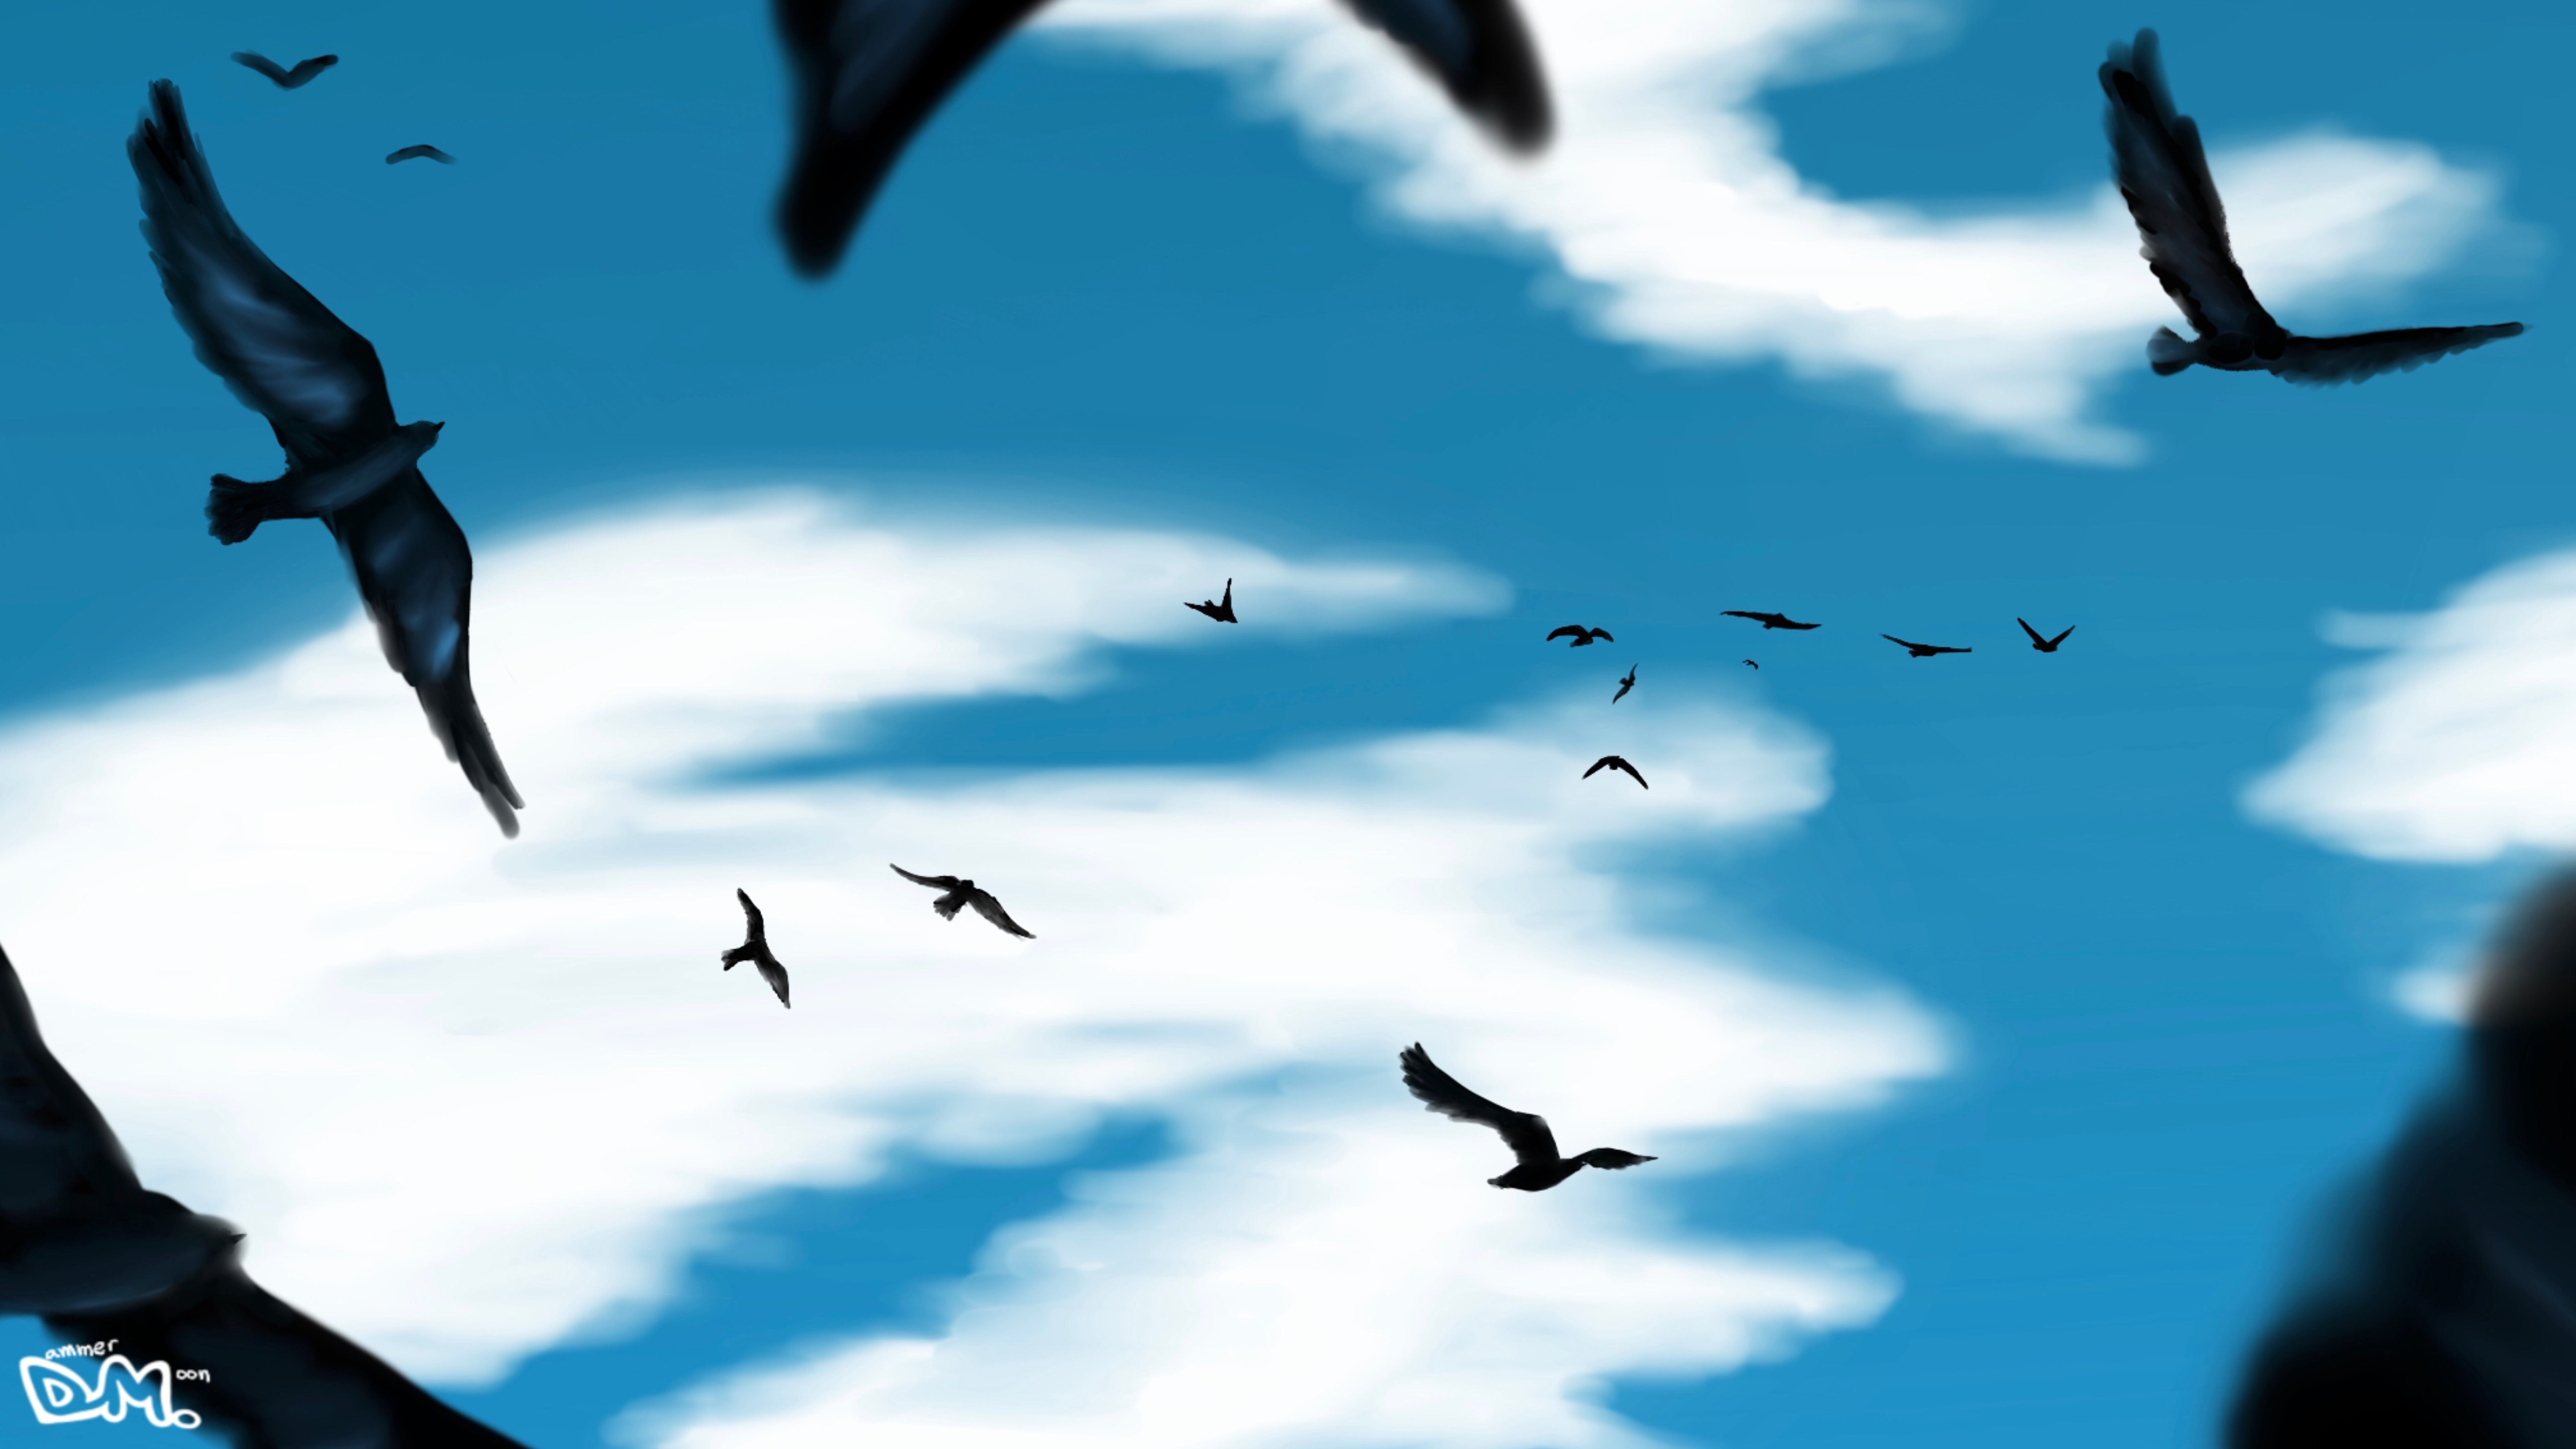 Birds flying in the sky Wallpaper 5k Ultra HD ID:8473